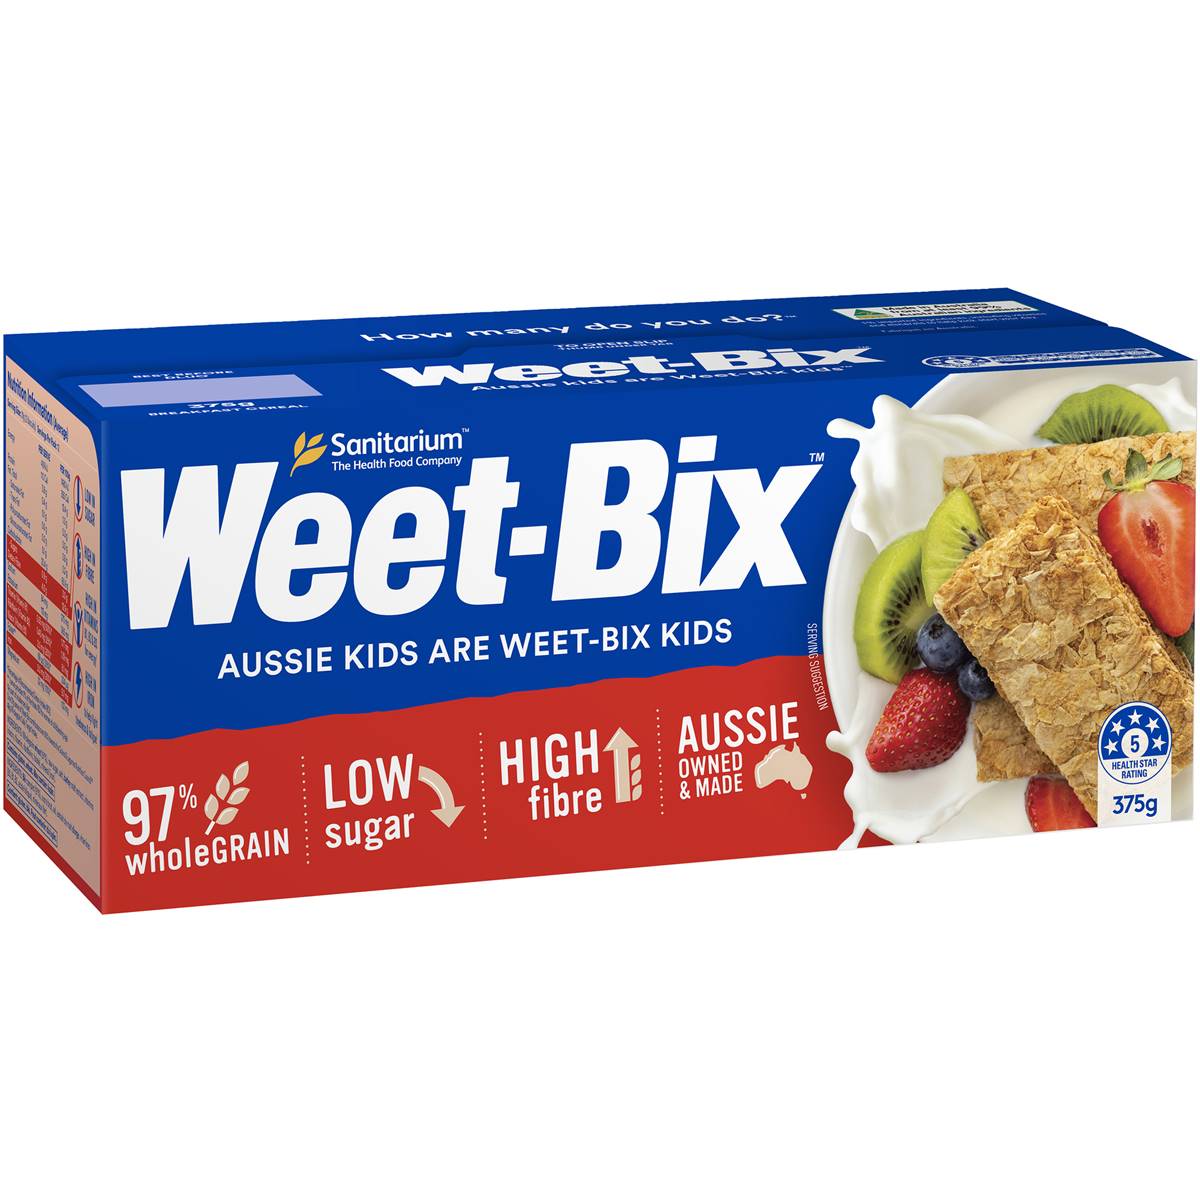 Calories in Sanitarium Weet-bix Breakfast Cereal